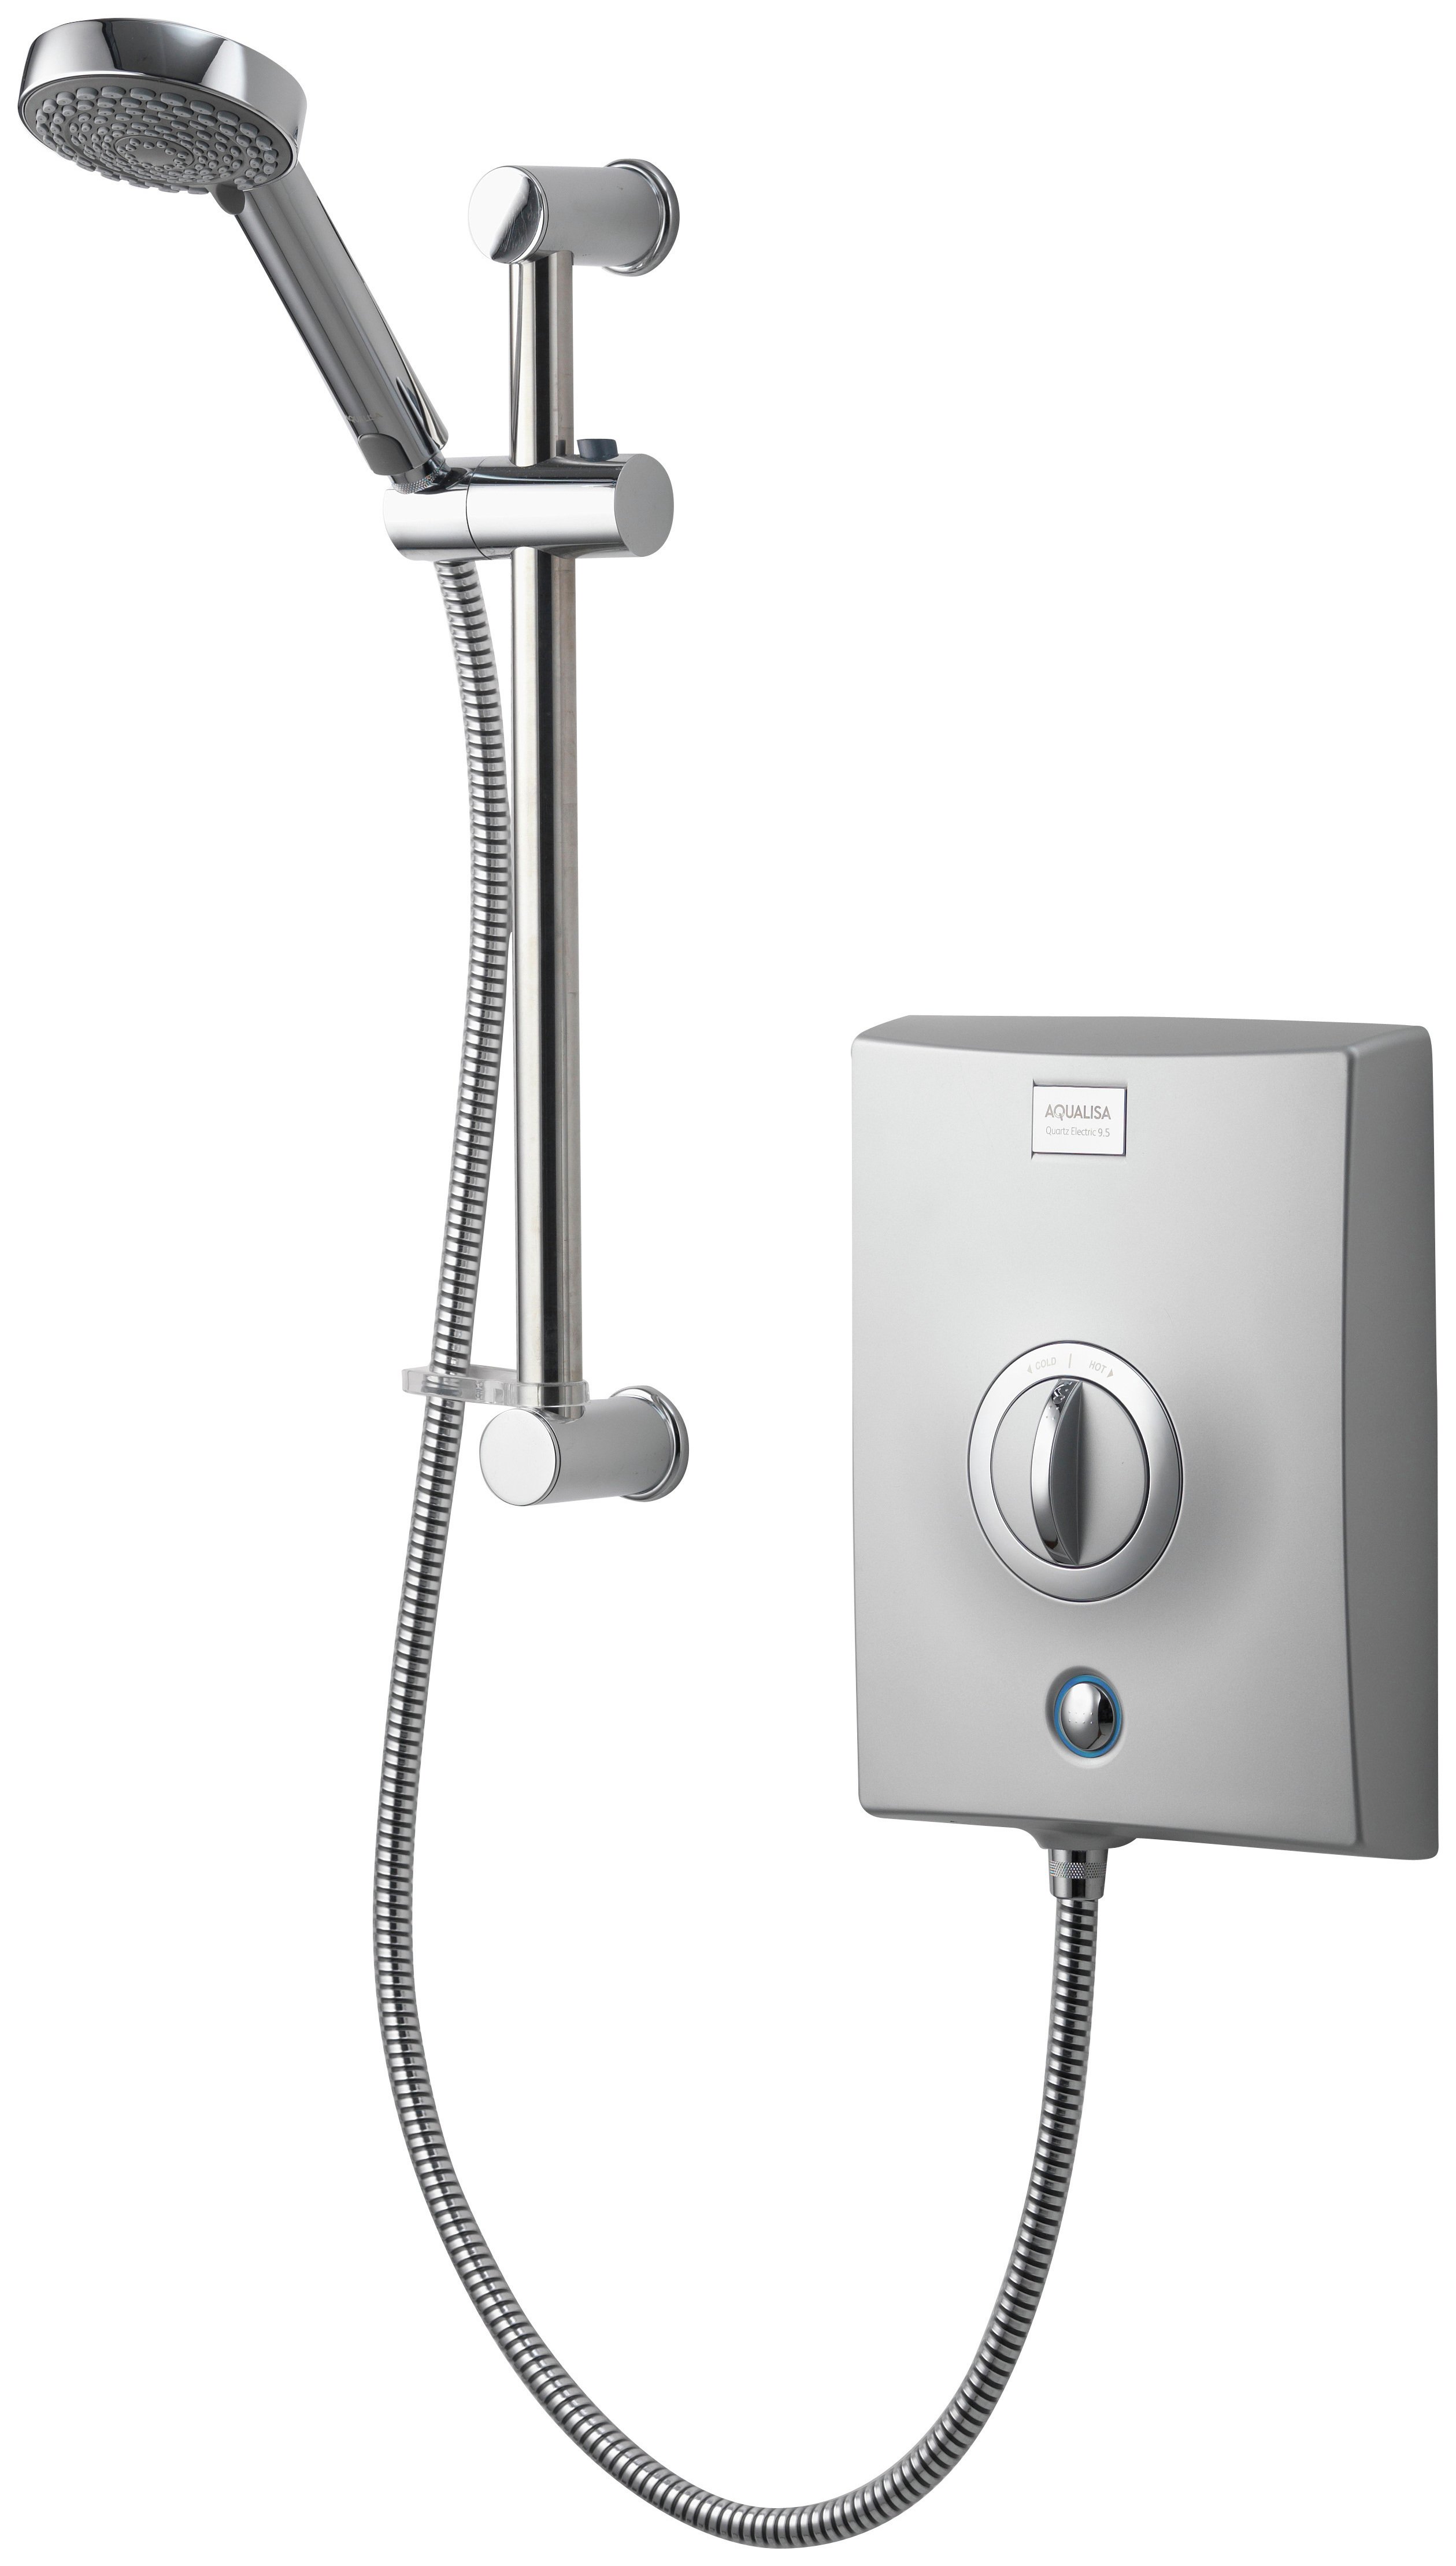 Aqualisa Quartz 9.5kW Electric Shower review